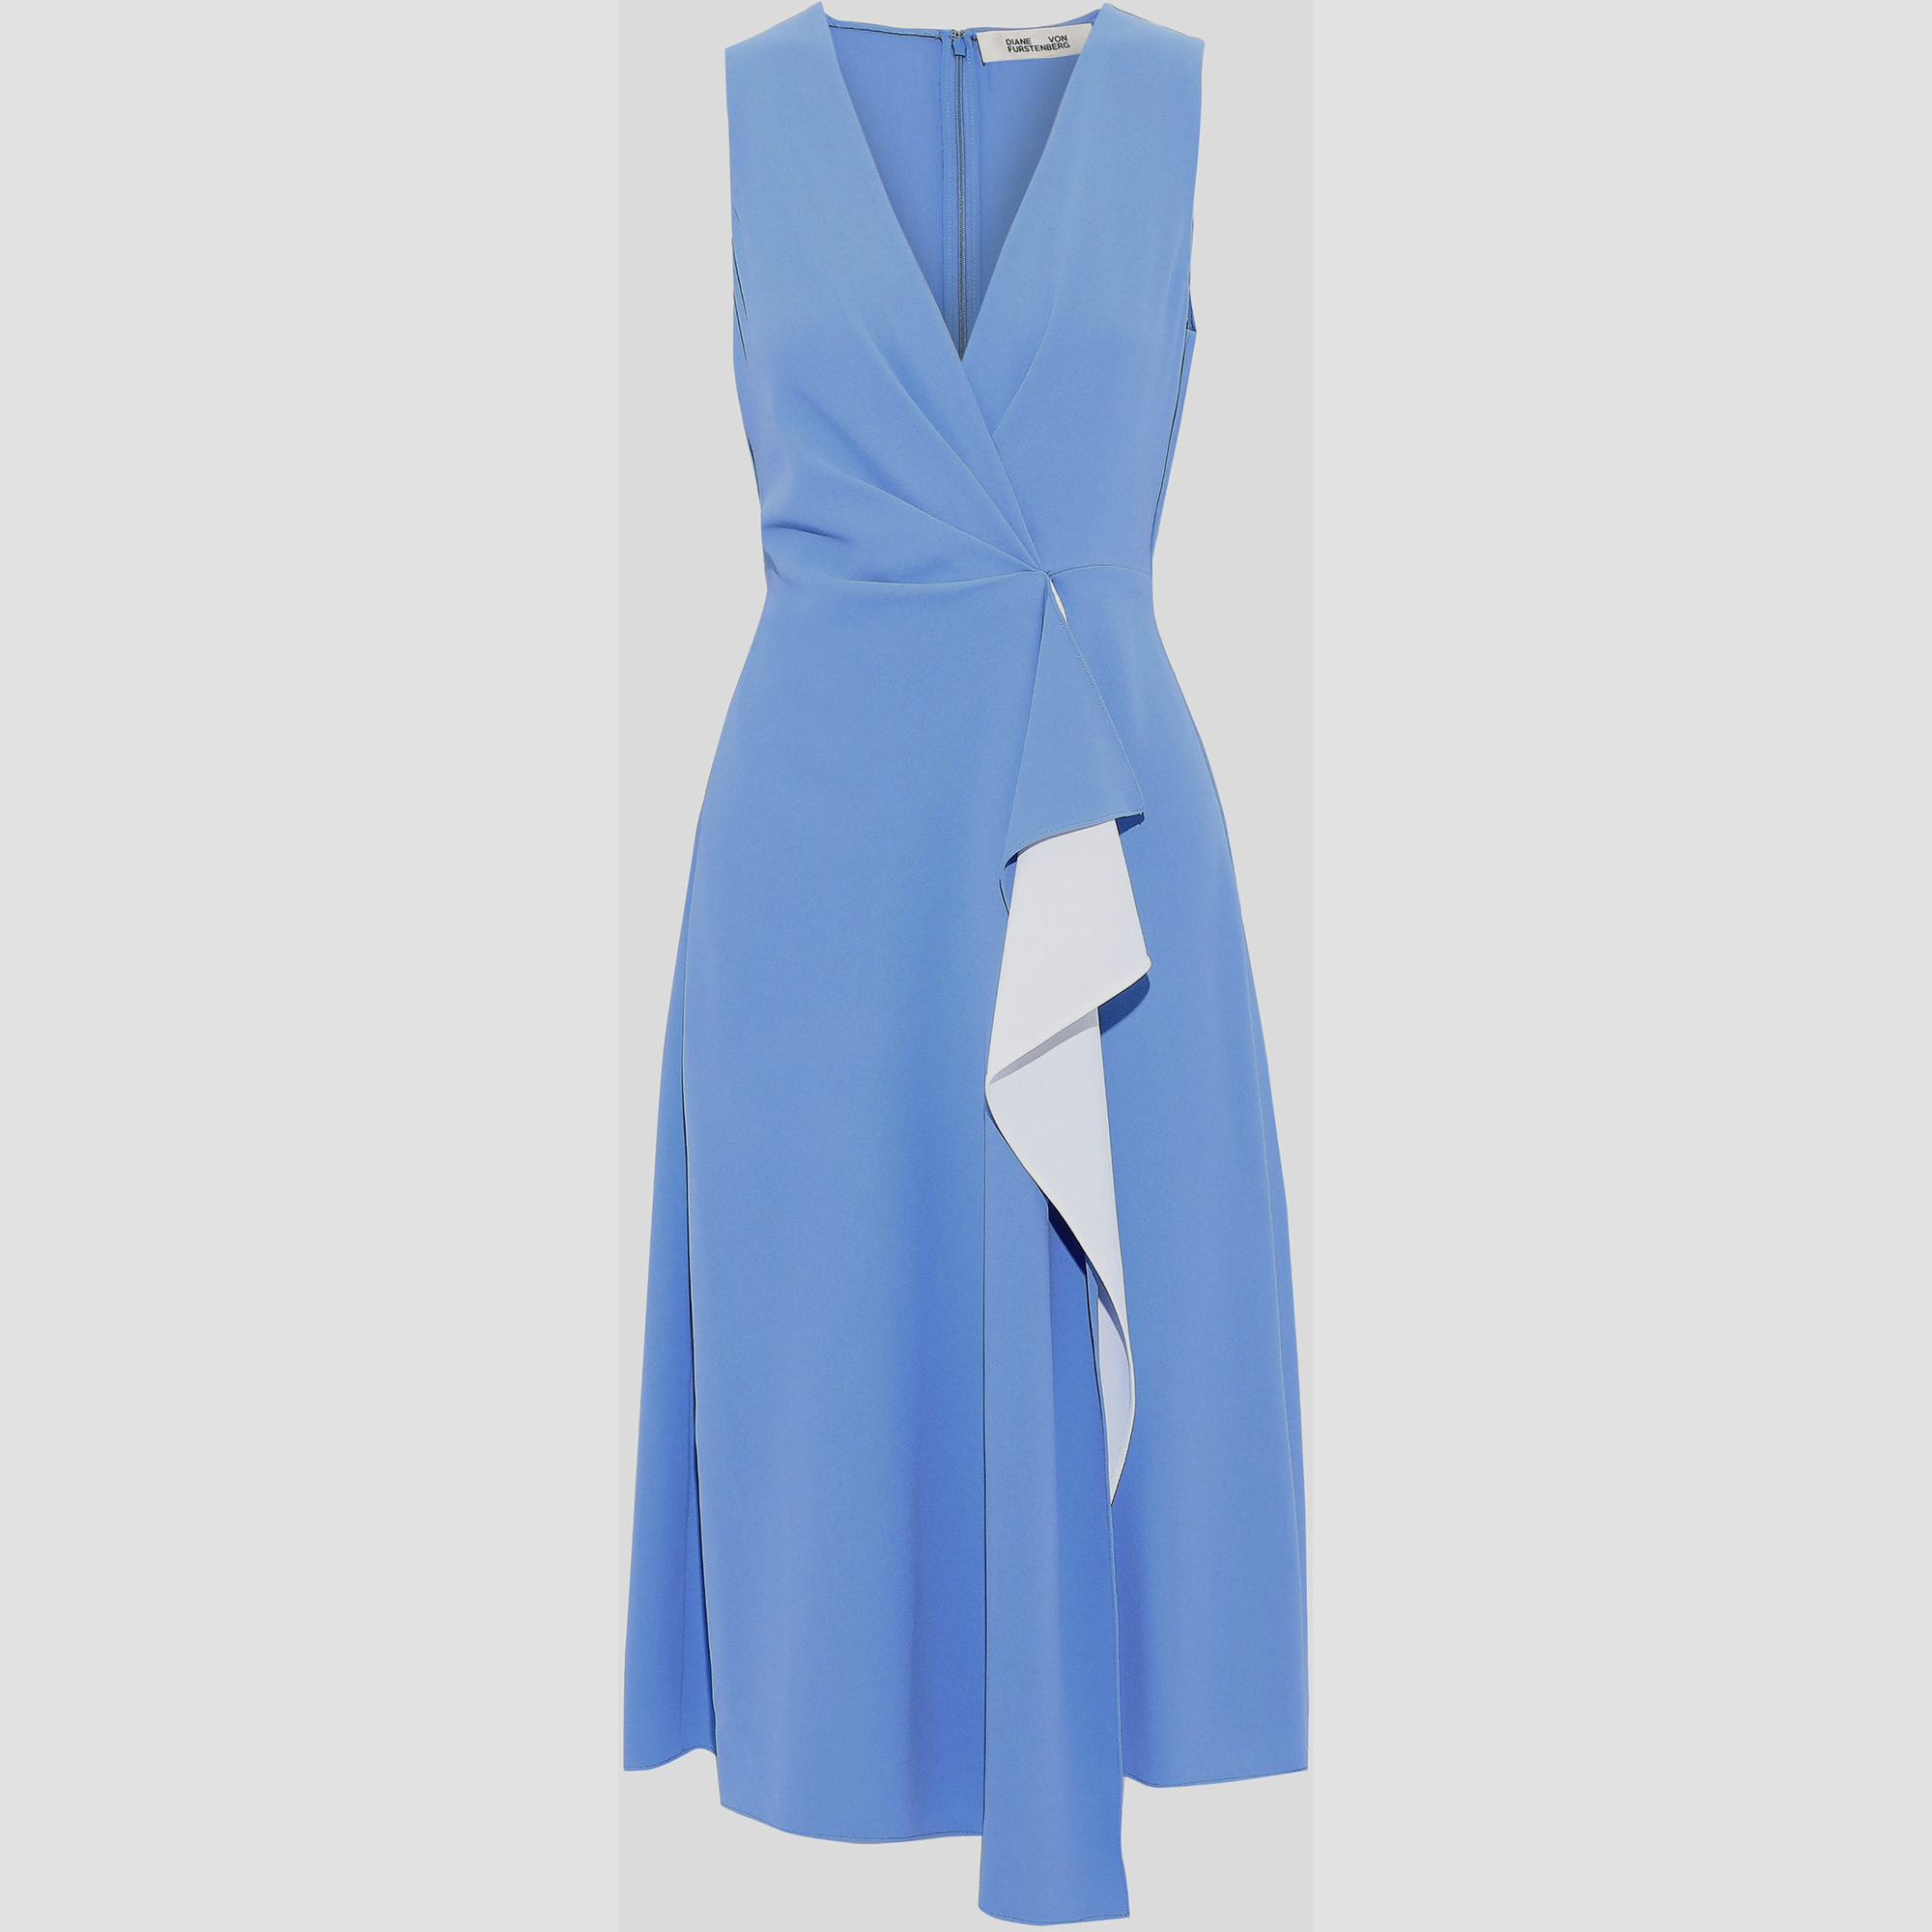 Diane von furstenberg blue crepe dress s (us 4)